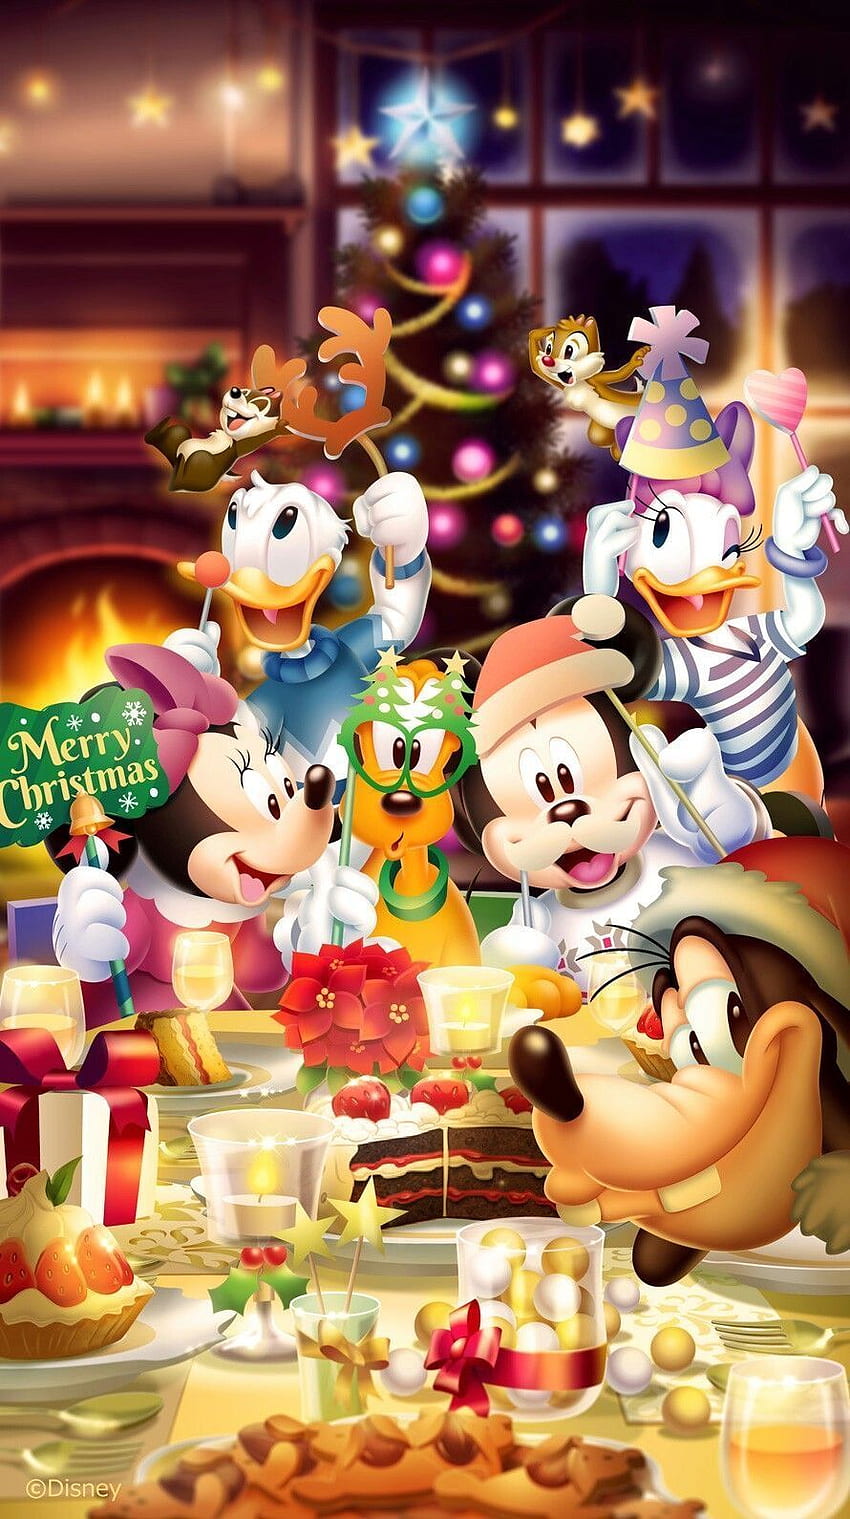 Mickey Giáng sinh là biểu tượng không thể thiếu trong mỗi dịp lễ cuối năm. Hãy dành chút thời gian để ngắm nhìn những hình ảnh đáng yêu của chú chuột này. Chắc chắn bạn sẽ thấy vui vẻ và được lấp đầy niềm tin vào tình yêu và hạnh phúc.